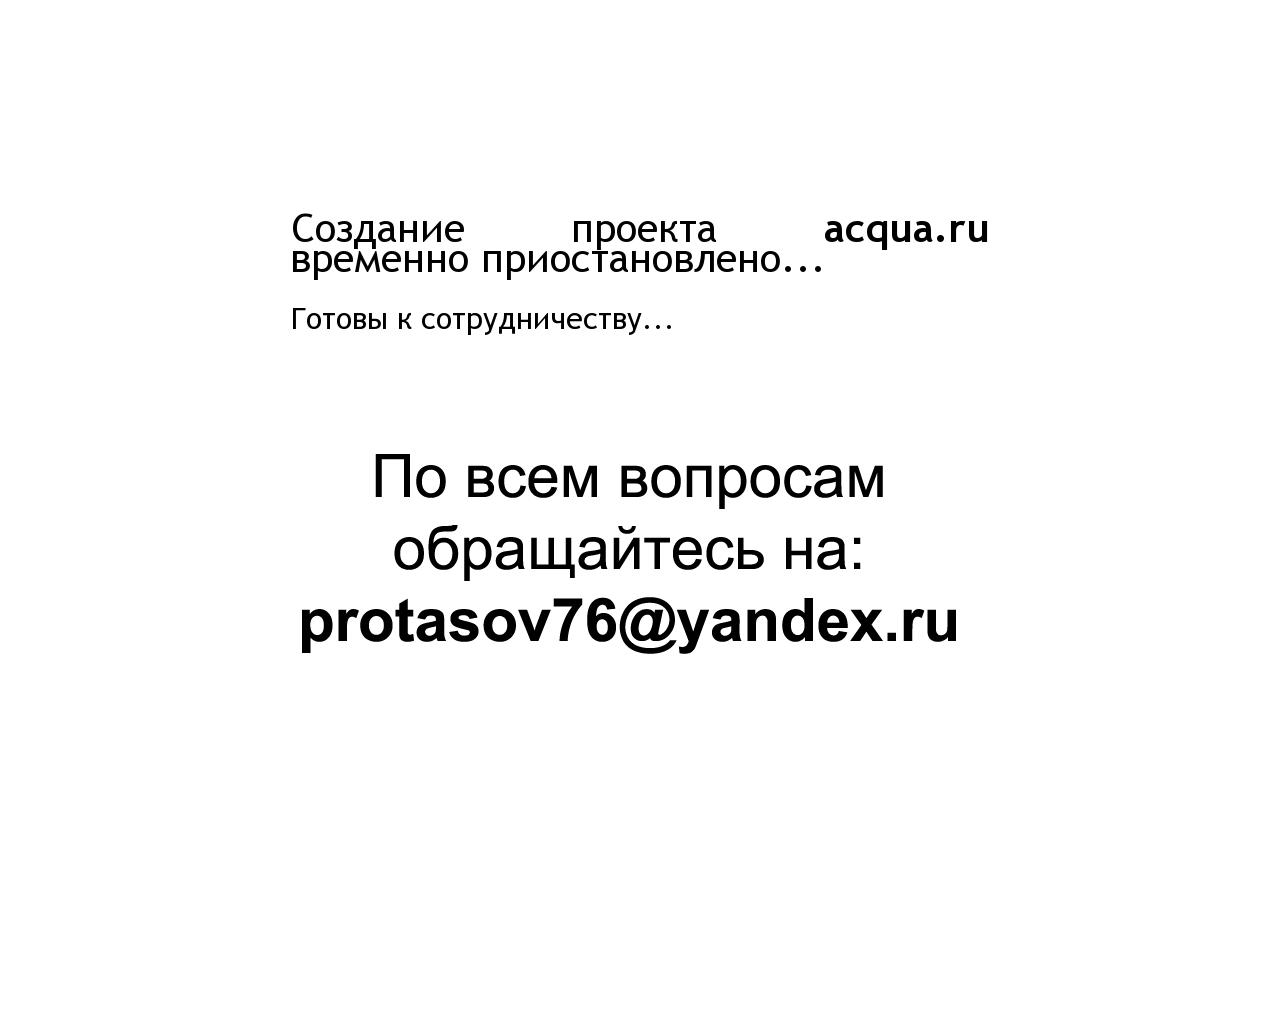 Изображение сайта acqua.ru в разрешении 1280x1024